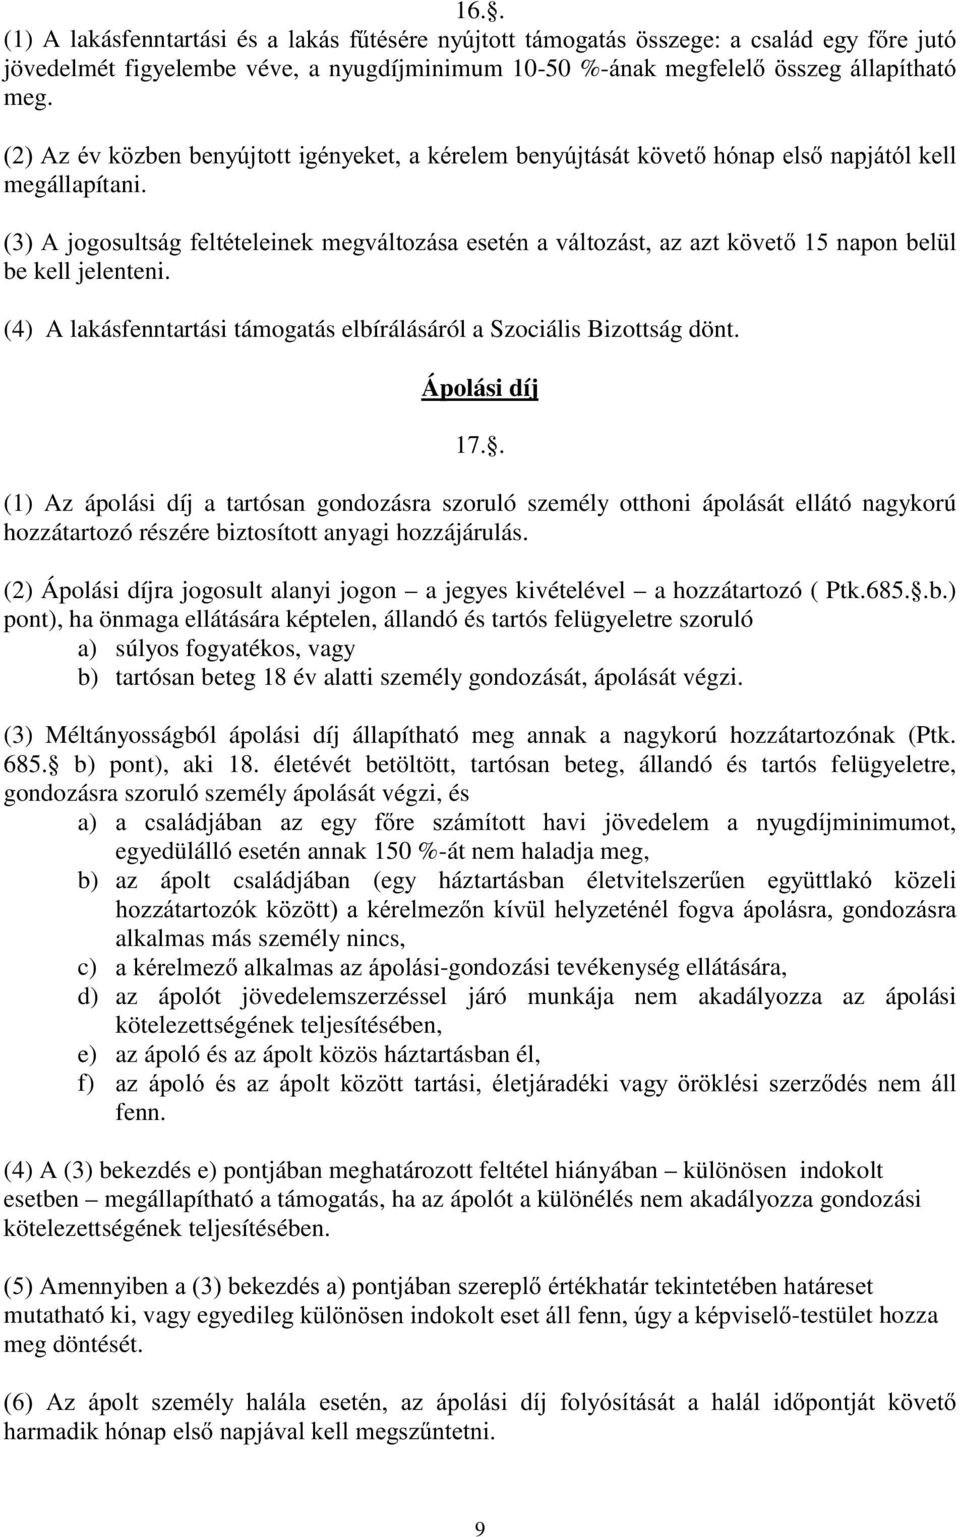 (4) A lakásfenntartási támogatás elbírálásáról a Szociális Bizottság dönt. Ápolási díj 17.